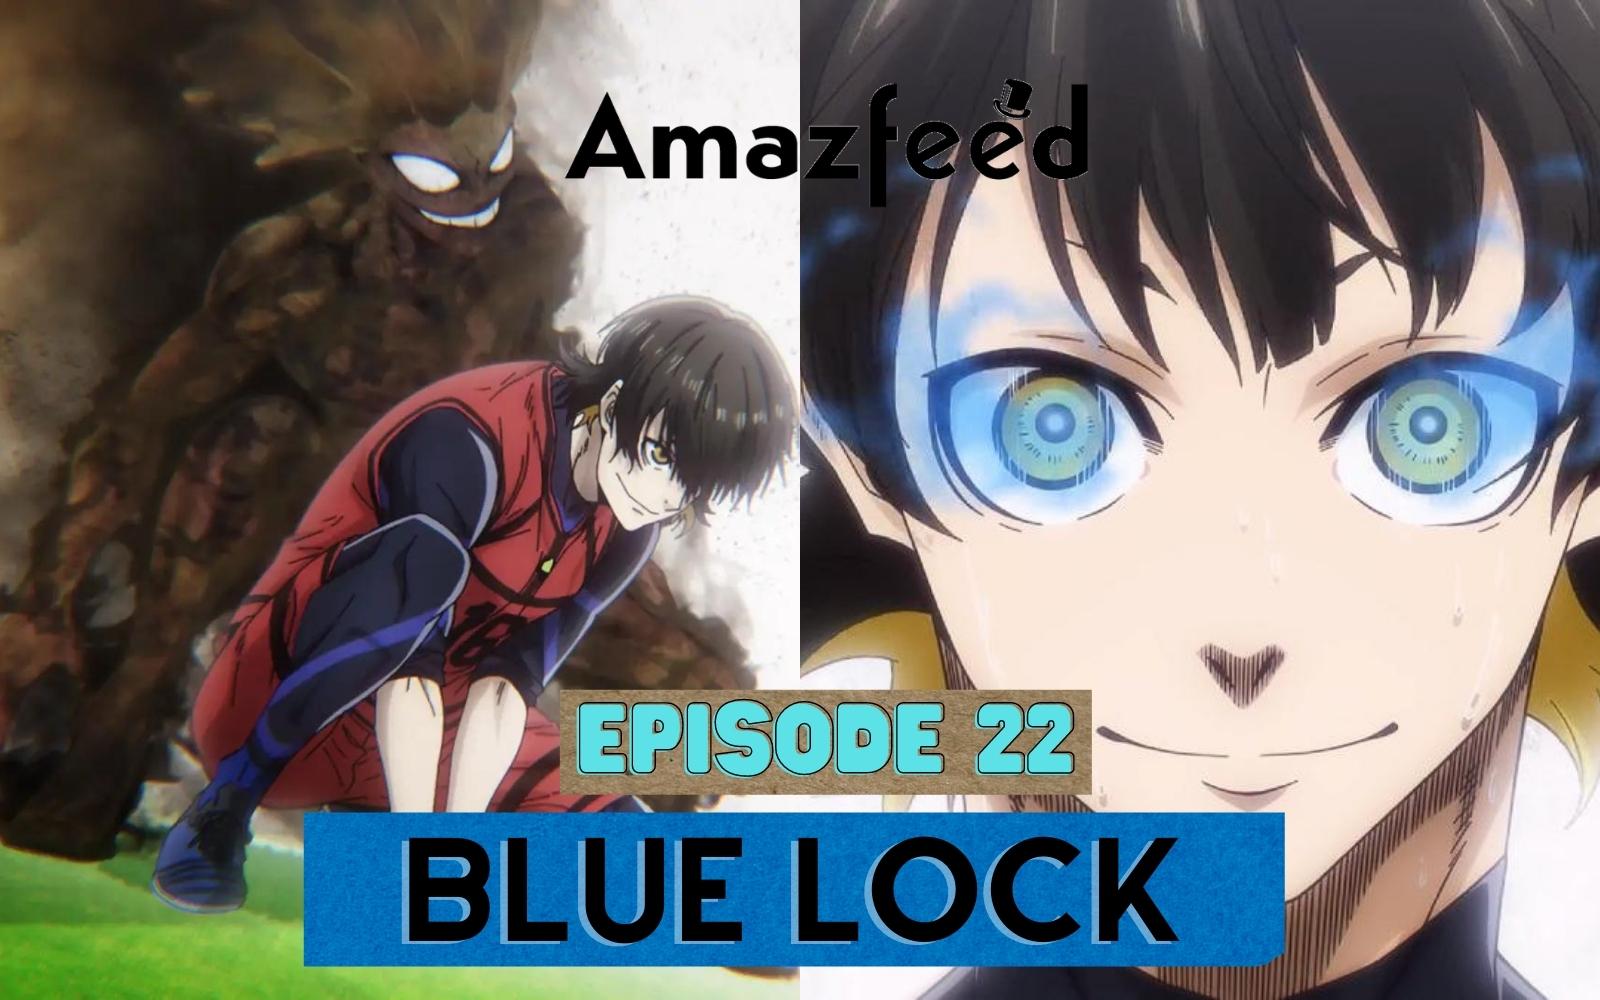 Blue Lock Episode 21 - Watch Blue Lock E21 Online